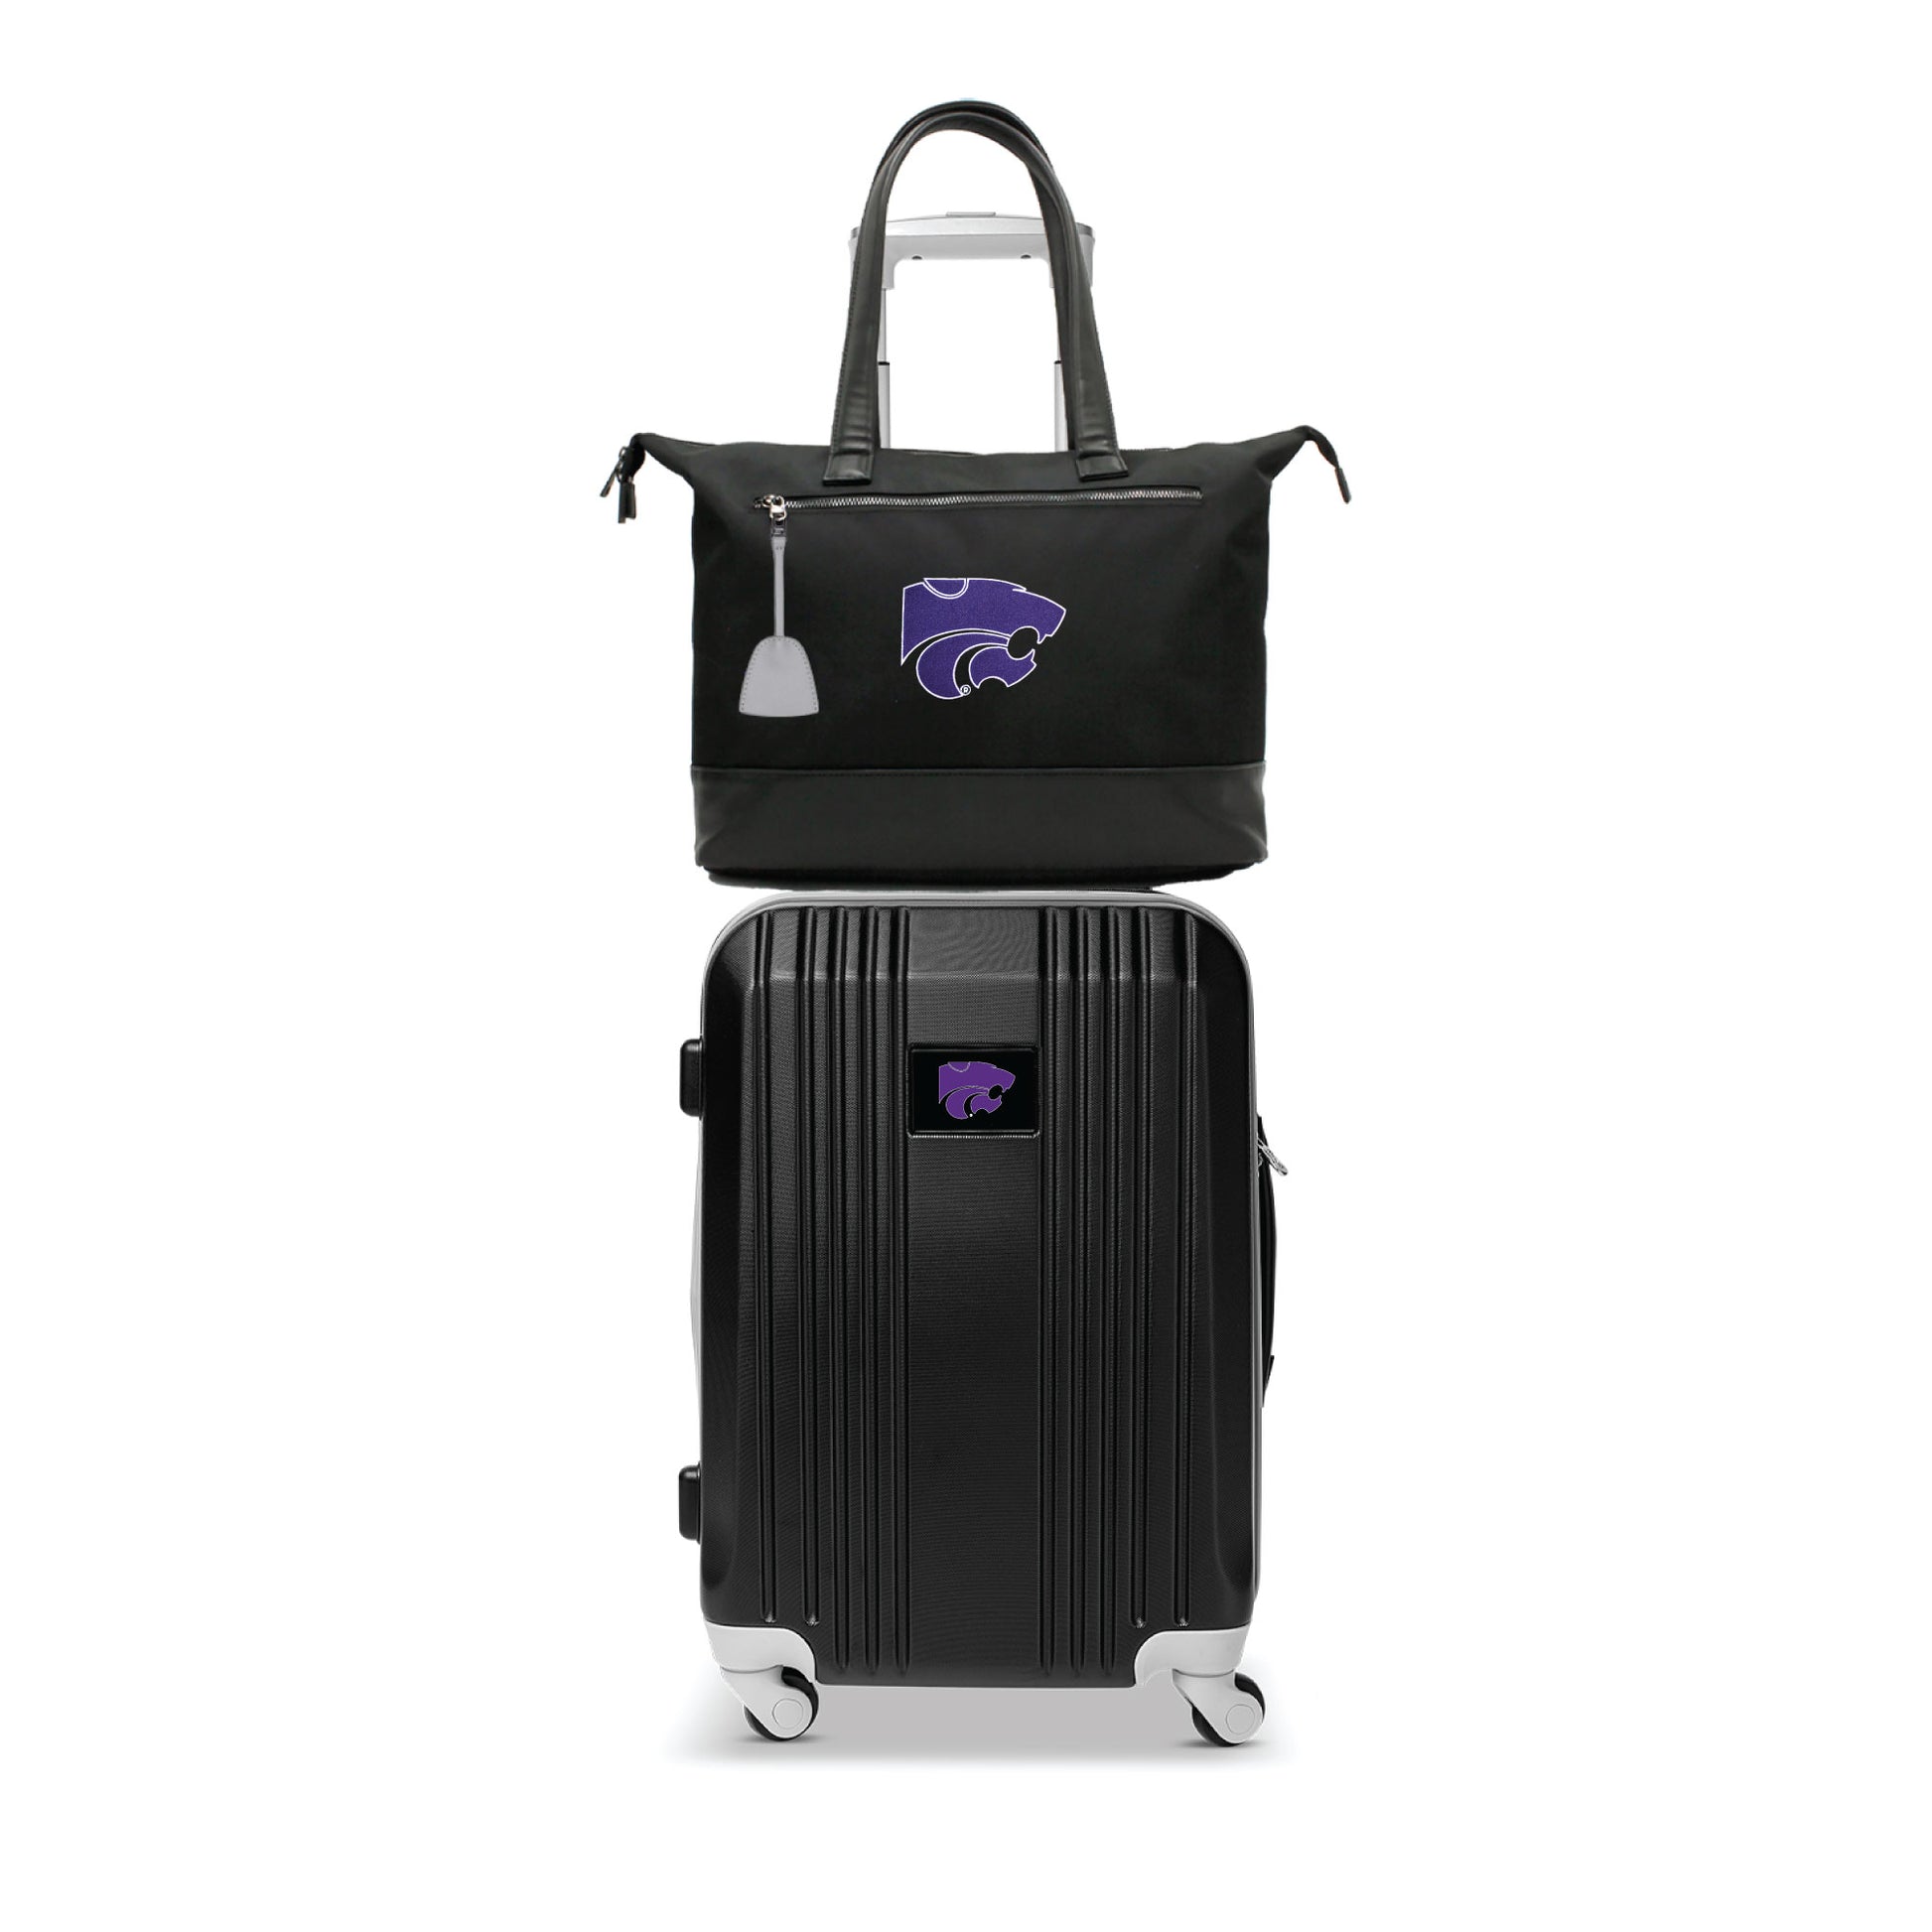 Kansas State Wildcats Premium Laptop Tote Bag and Luggage Set